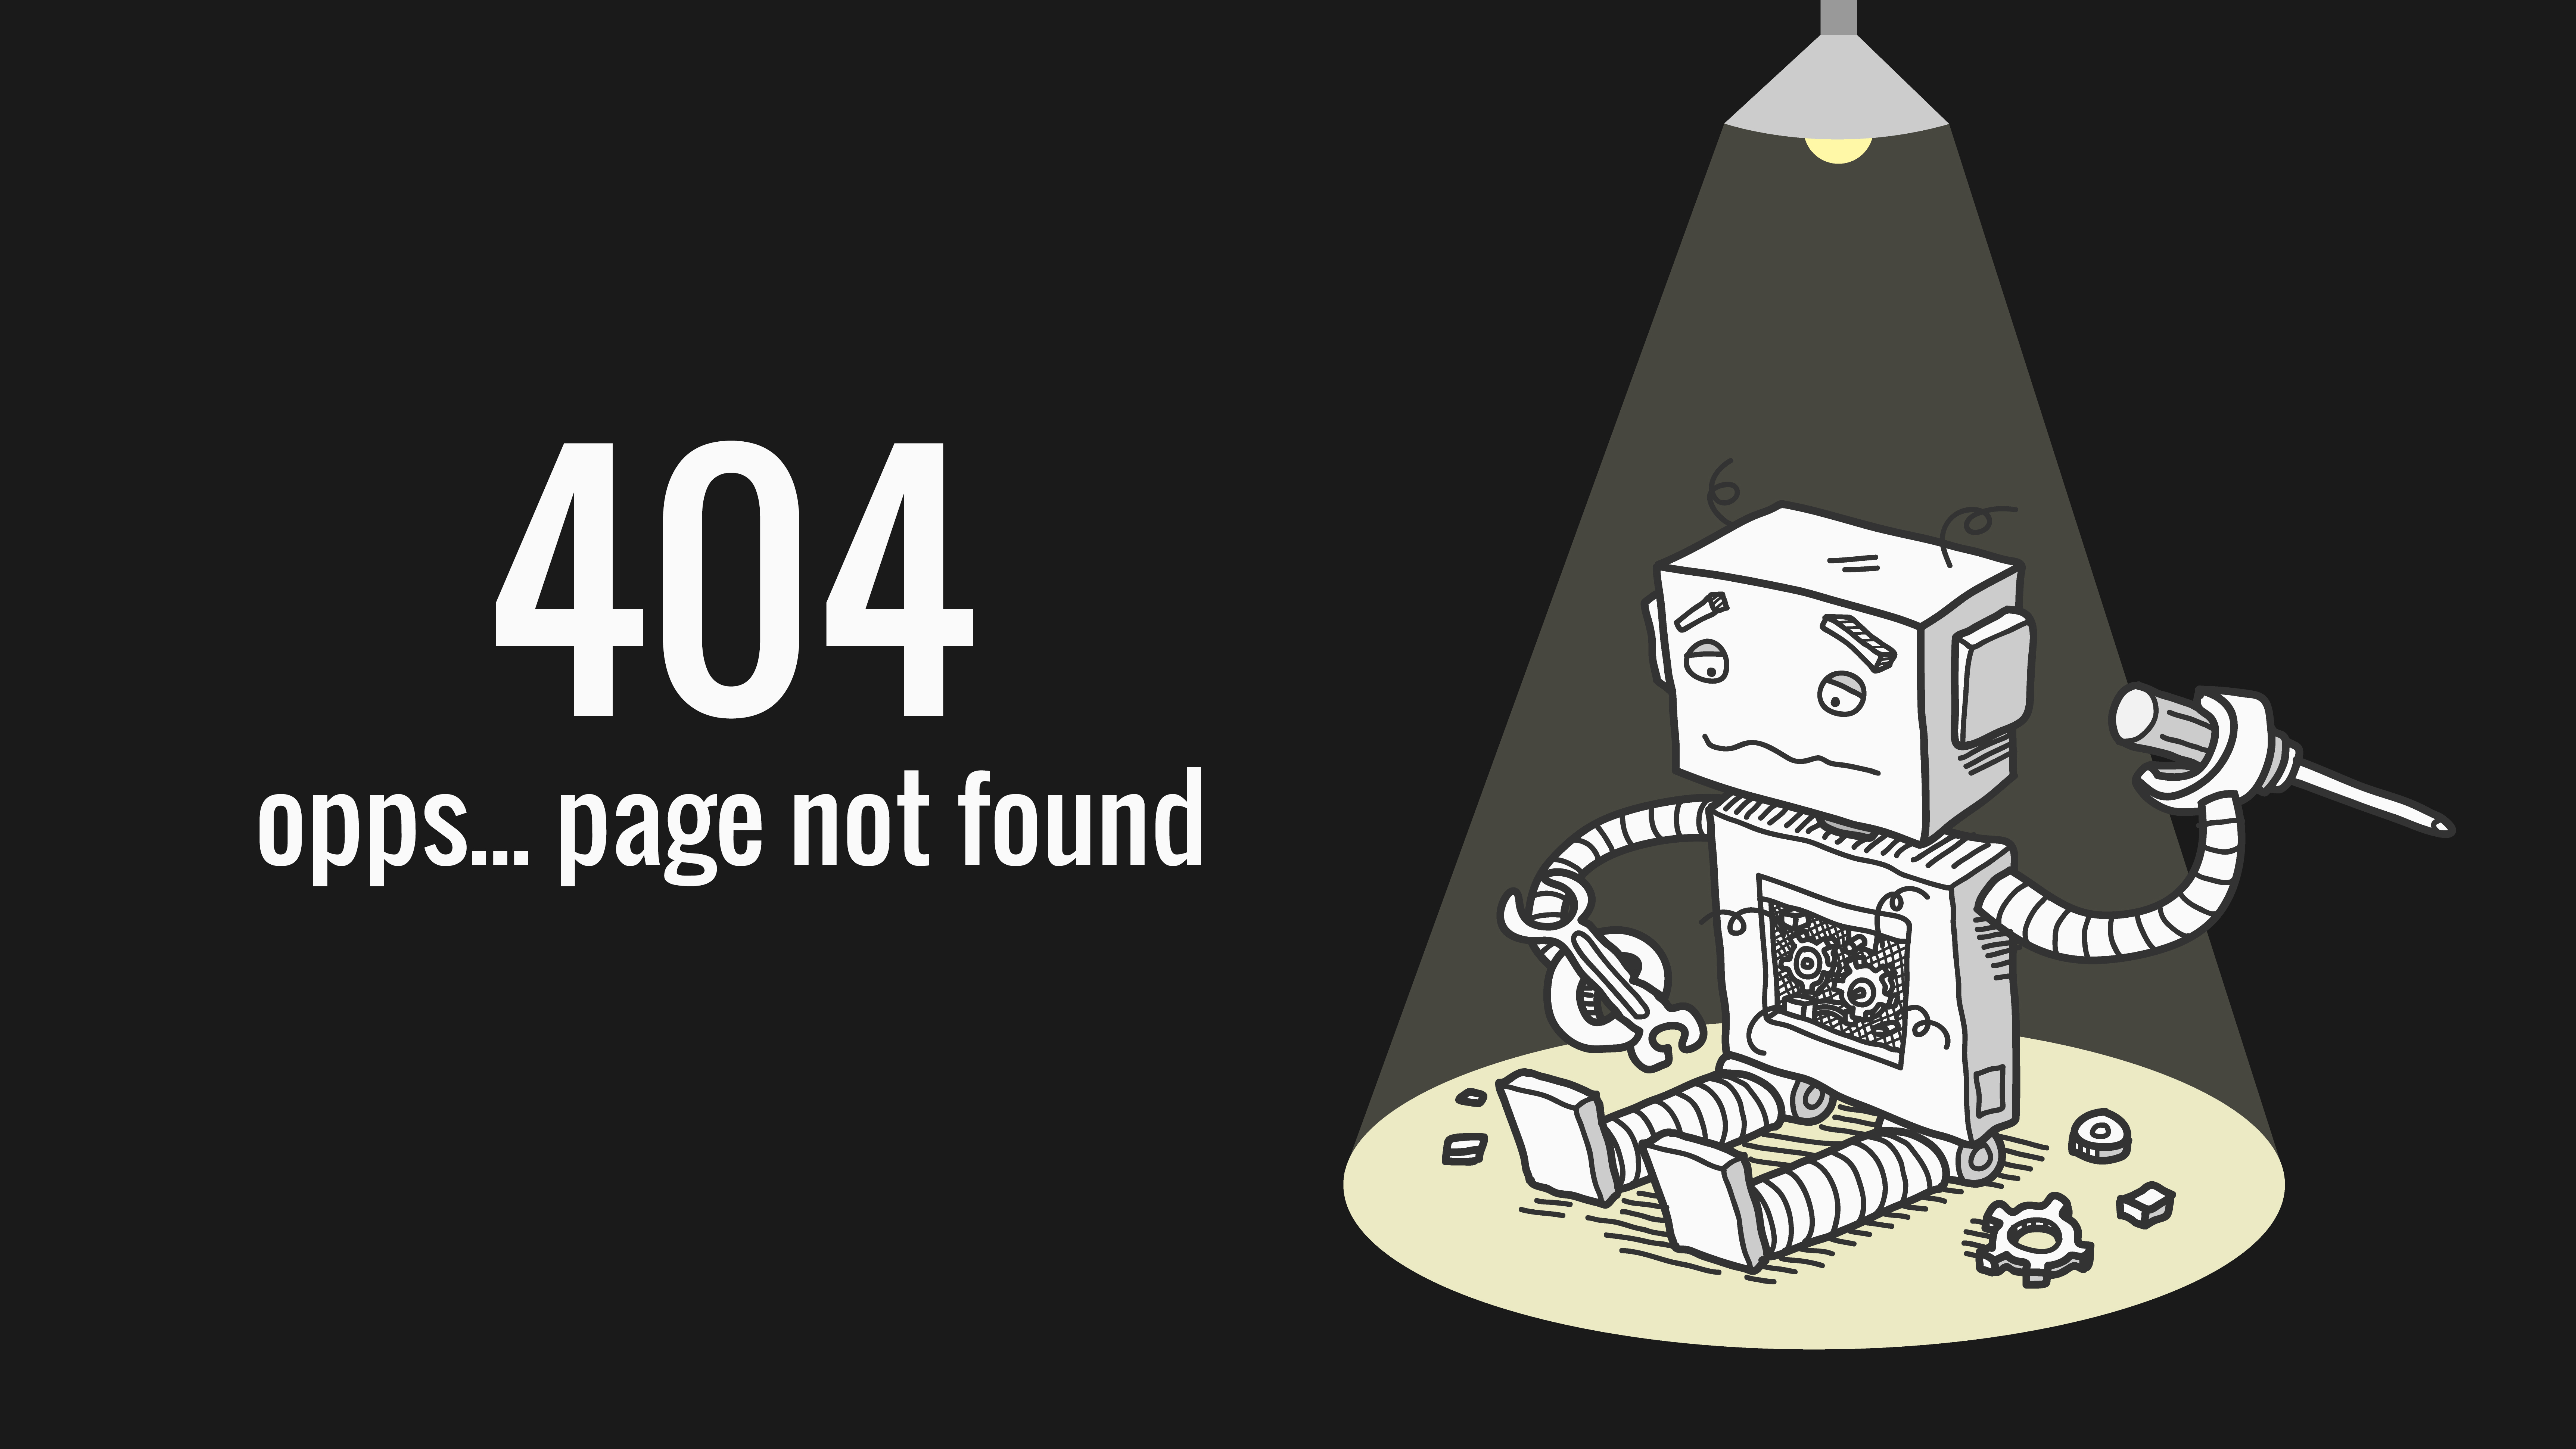 Content not found. Ошибка 404 иллюстрация. Картинка для страницы 404. Страница ошибки 404. Ошибка 404 робот.